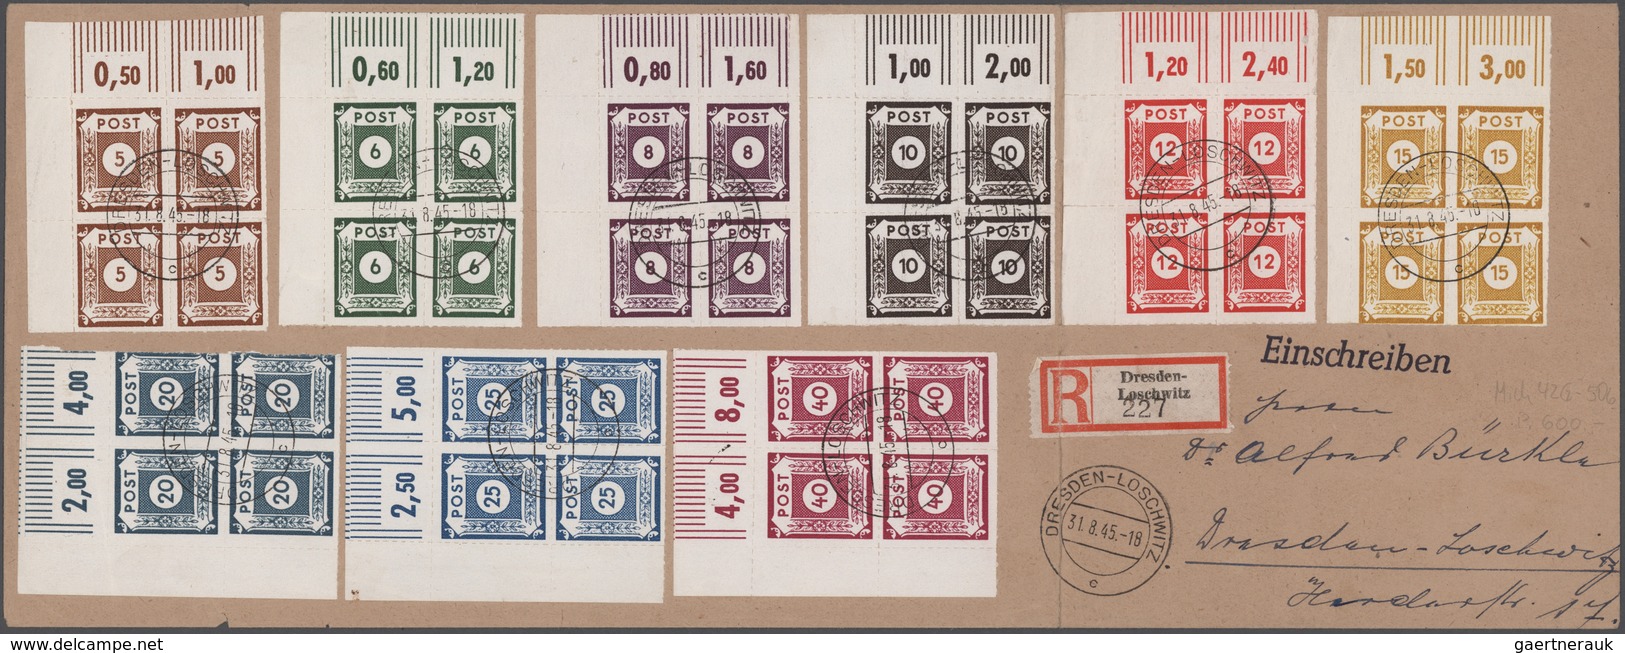 Deutschland nach 1945: 1945-1960, spannender Bestand mit rund 650 Briefen, Belegen und Ganzsachen, d